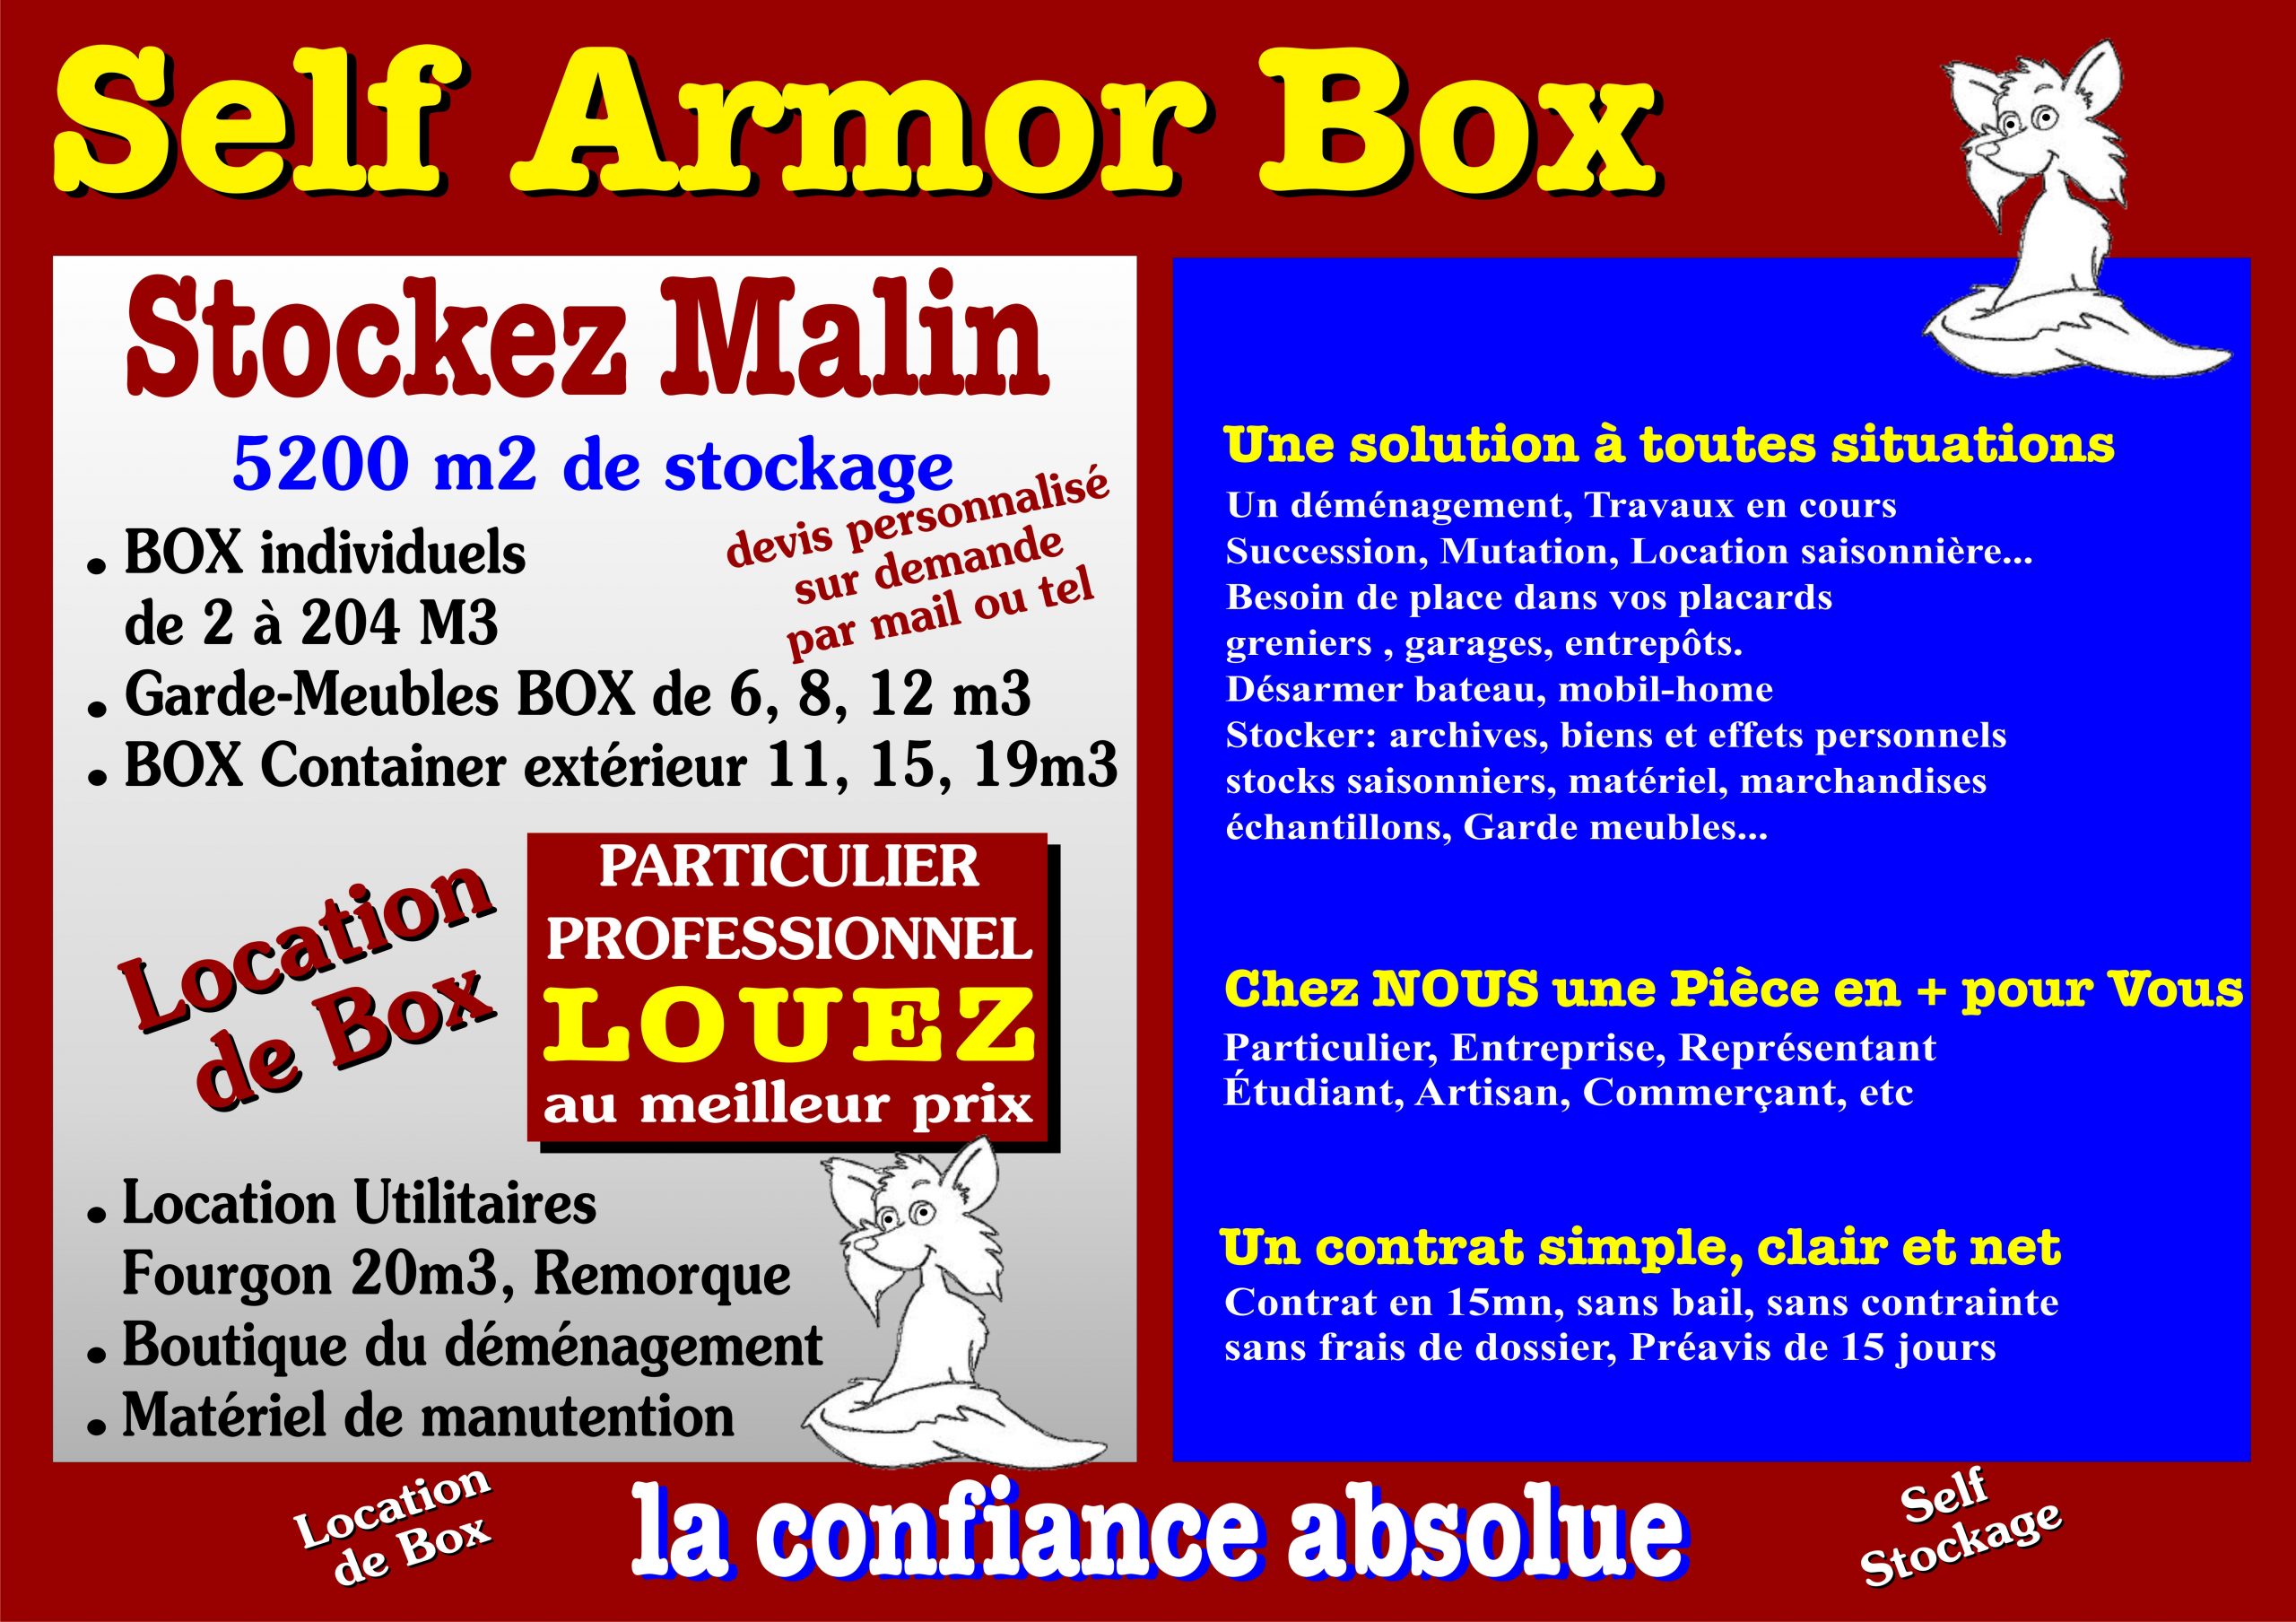 À propos de Self Armor Box